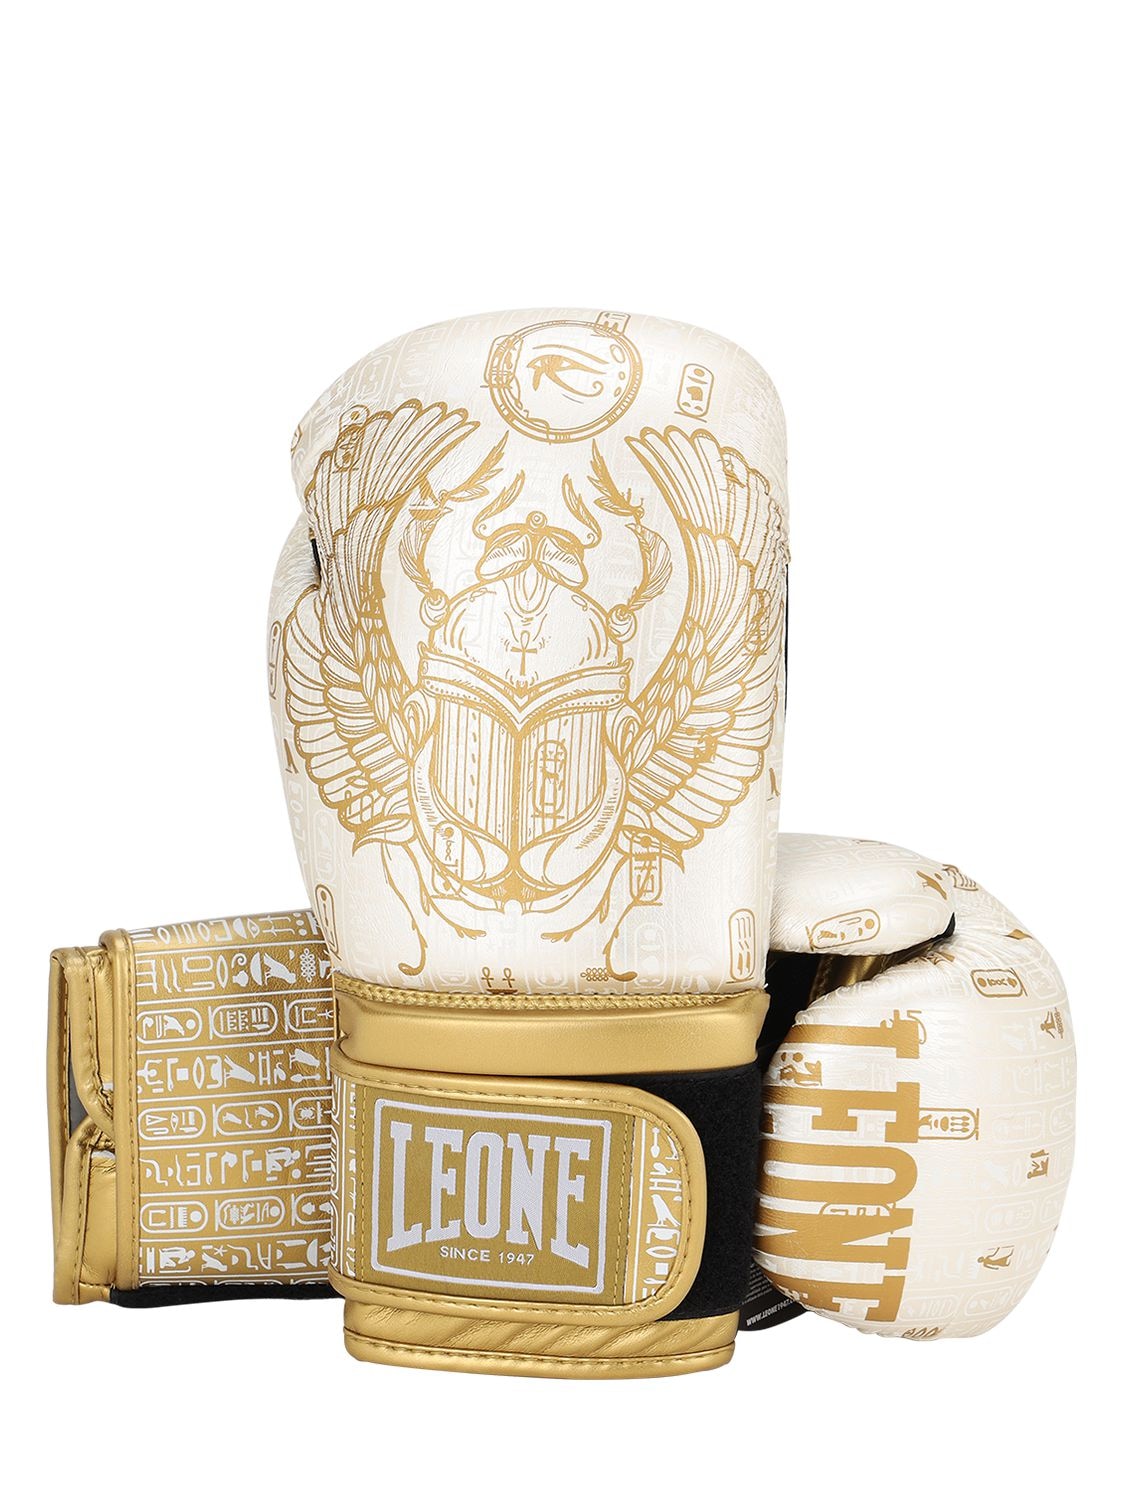 LEONE 1947, guantes de boxeo leone